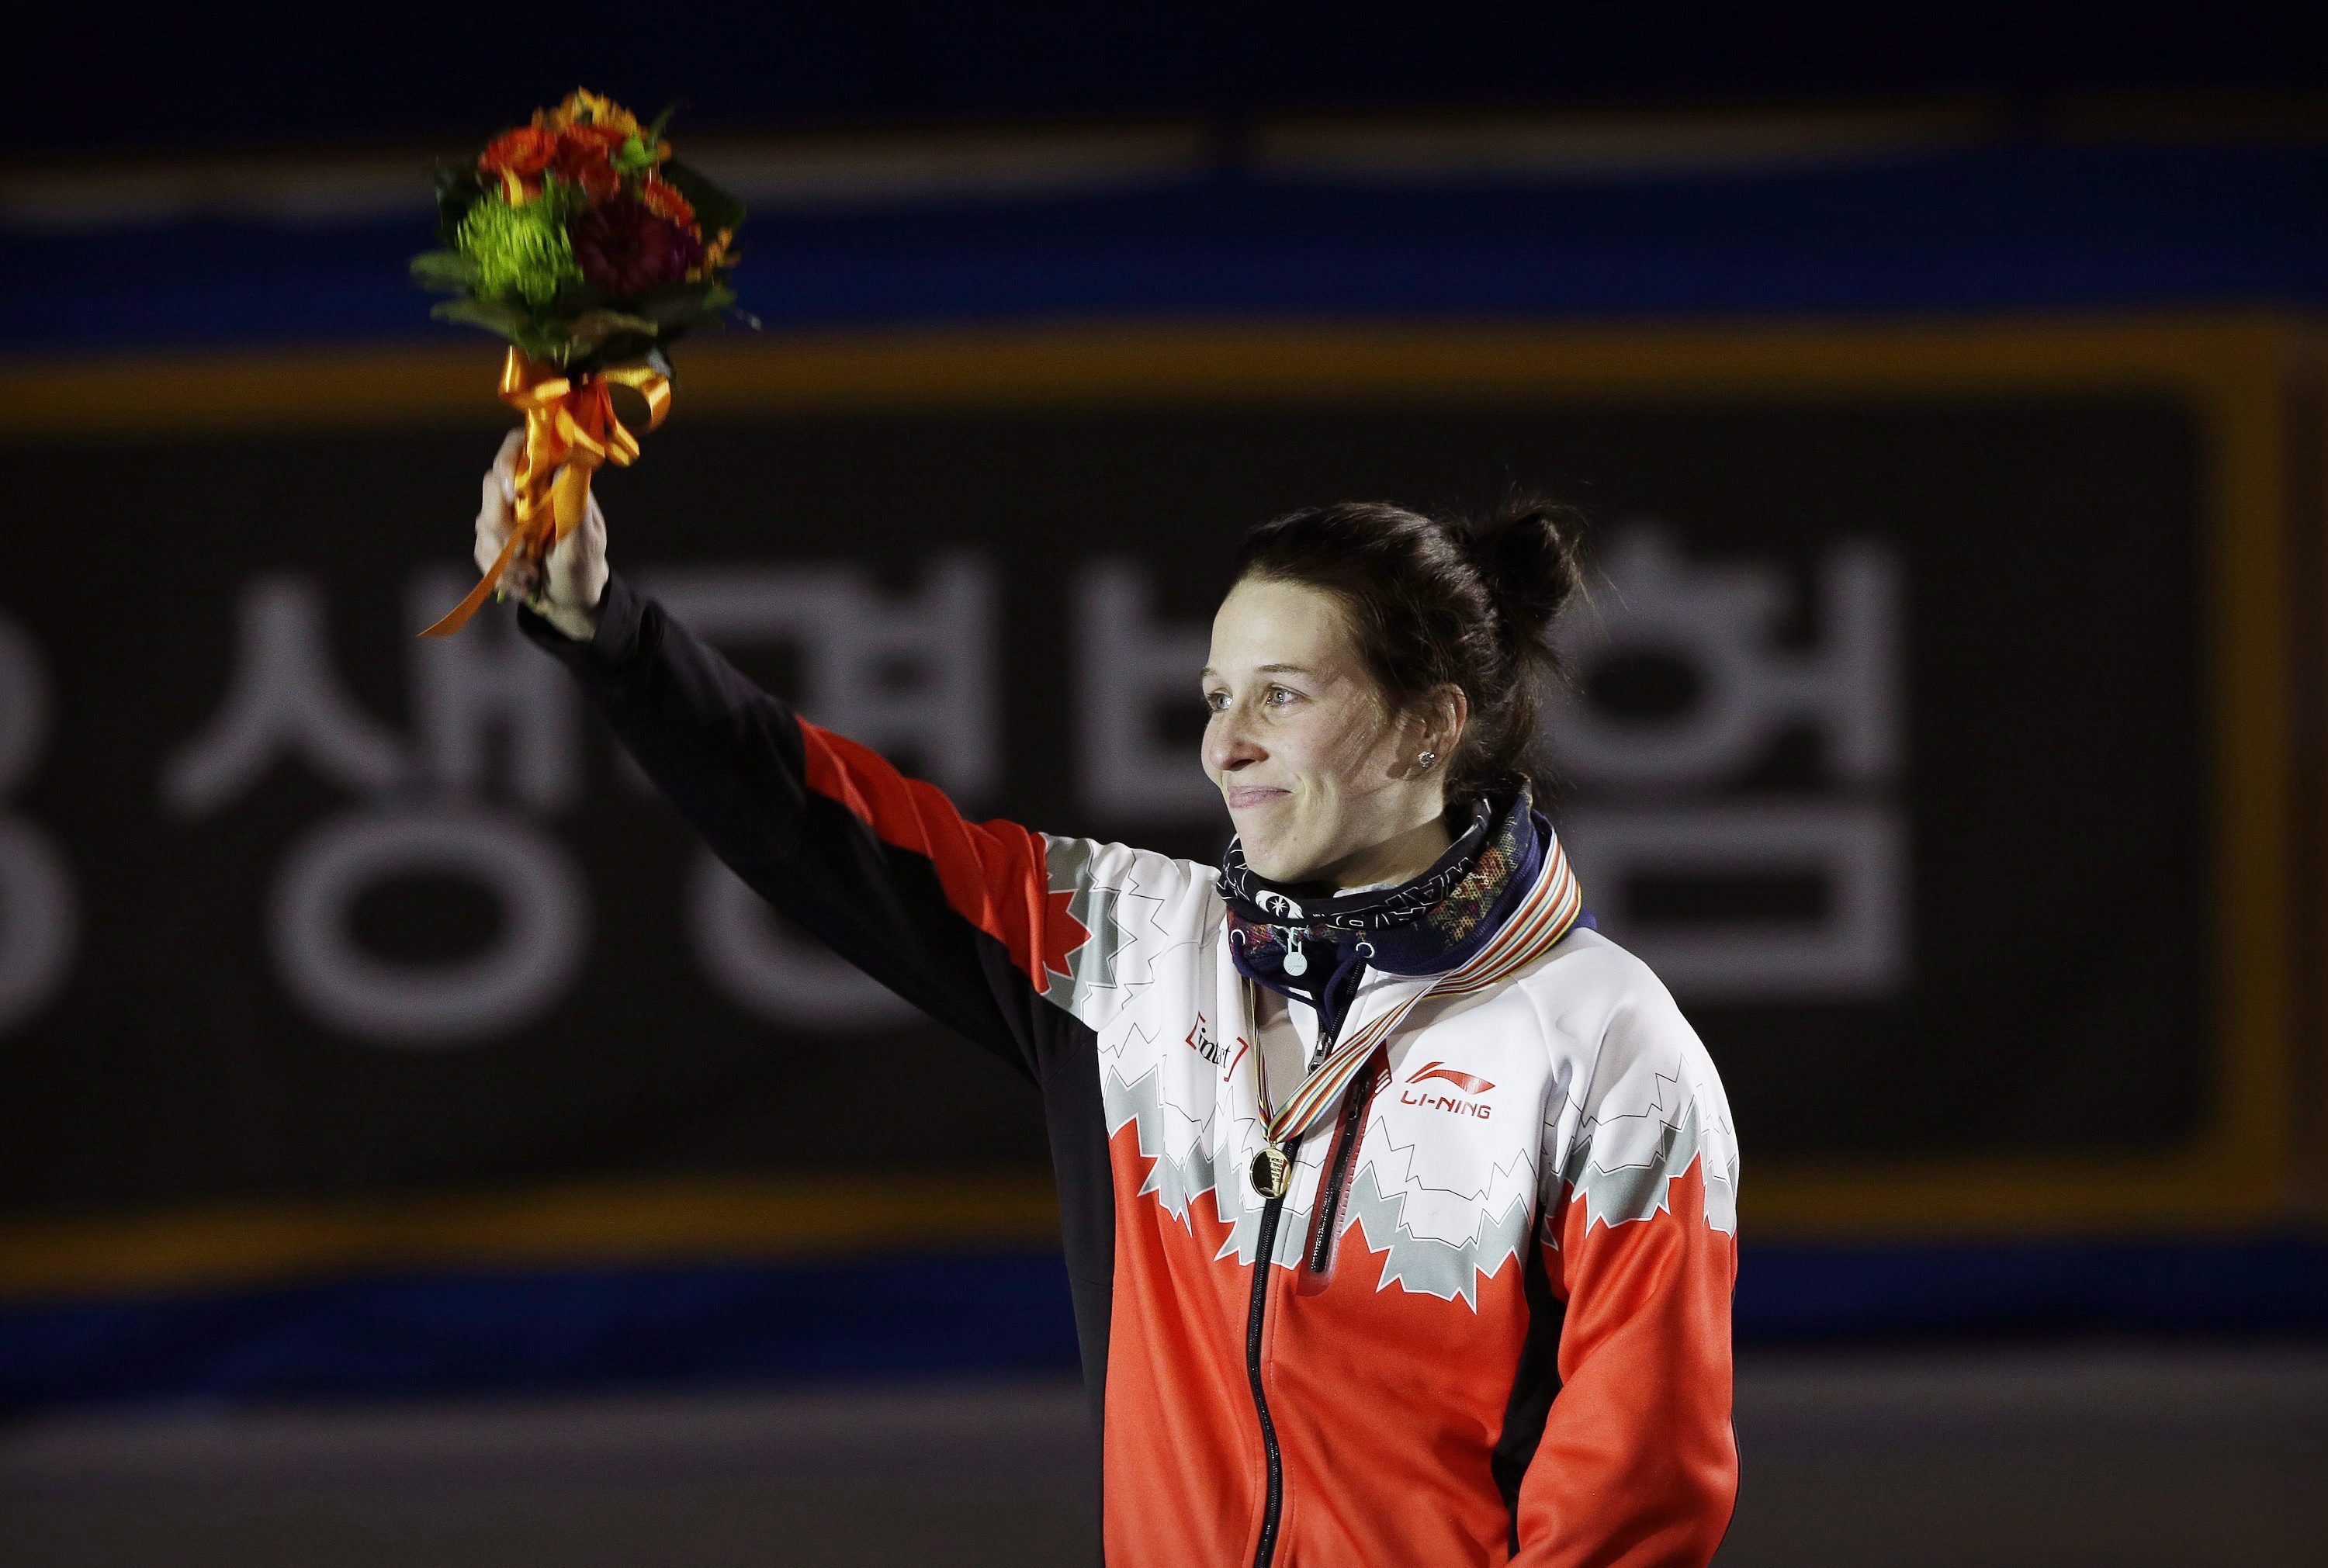 Marianne St-Gelais célèbre sa médaille d'or remportée à l'épreuve 1500 m des Championnats du monde de patinage de vitesse sur courte piste à Séoul, en Corée du Sud, le 12 mars 2016. (AP Photo/Ahn Young-joon)